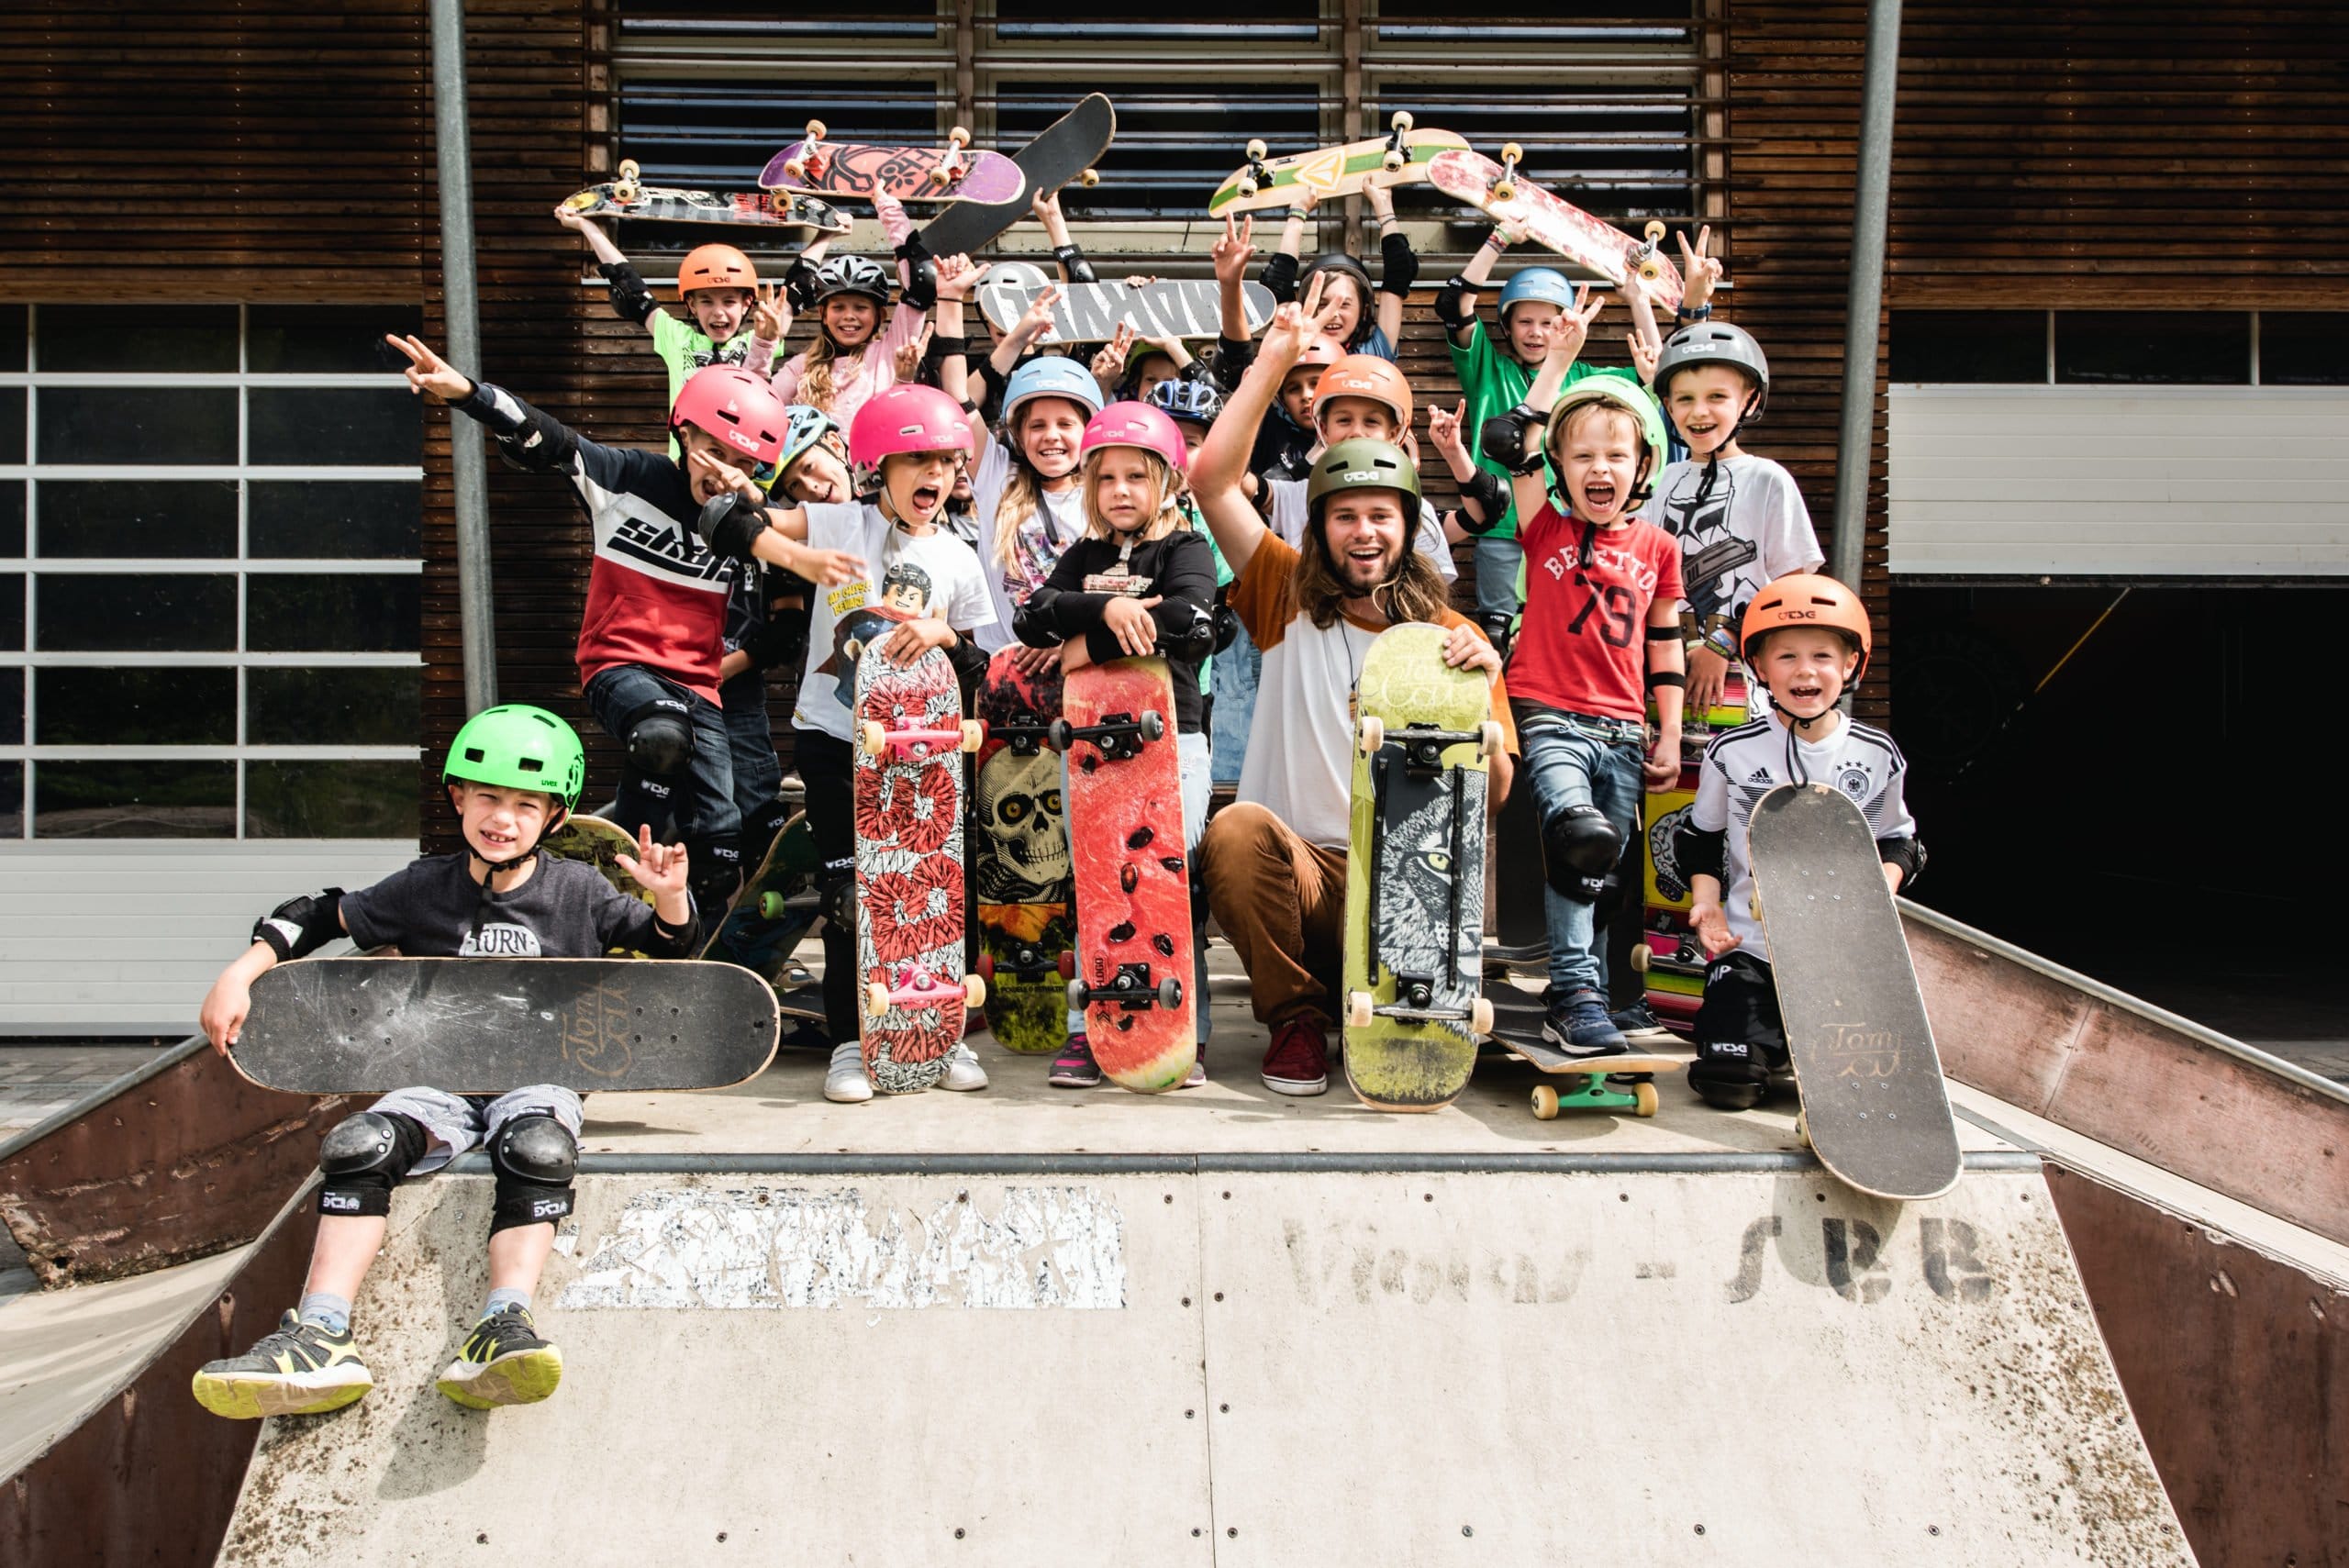 Skateboard fahren – der ideale Sport, um Kids Selbstvertrauen zu geben